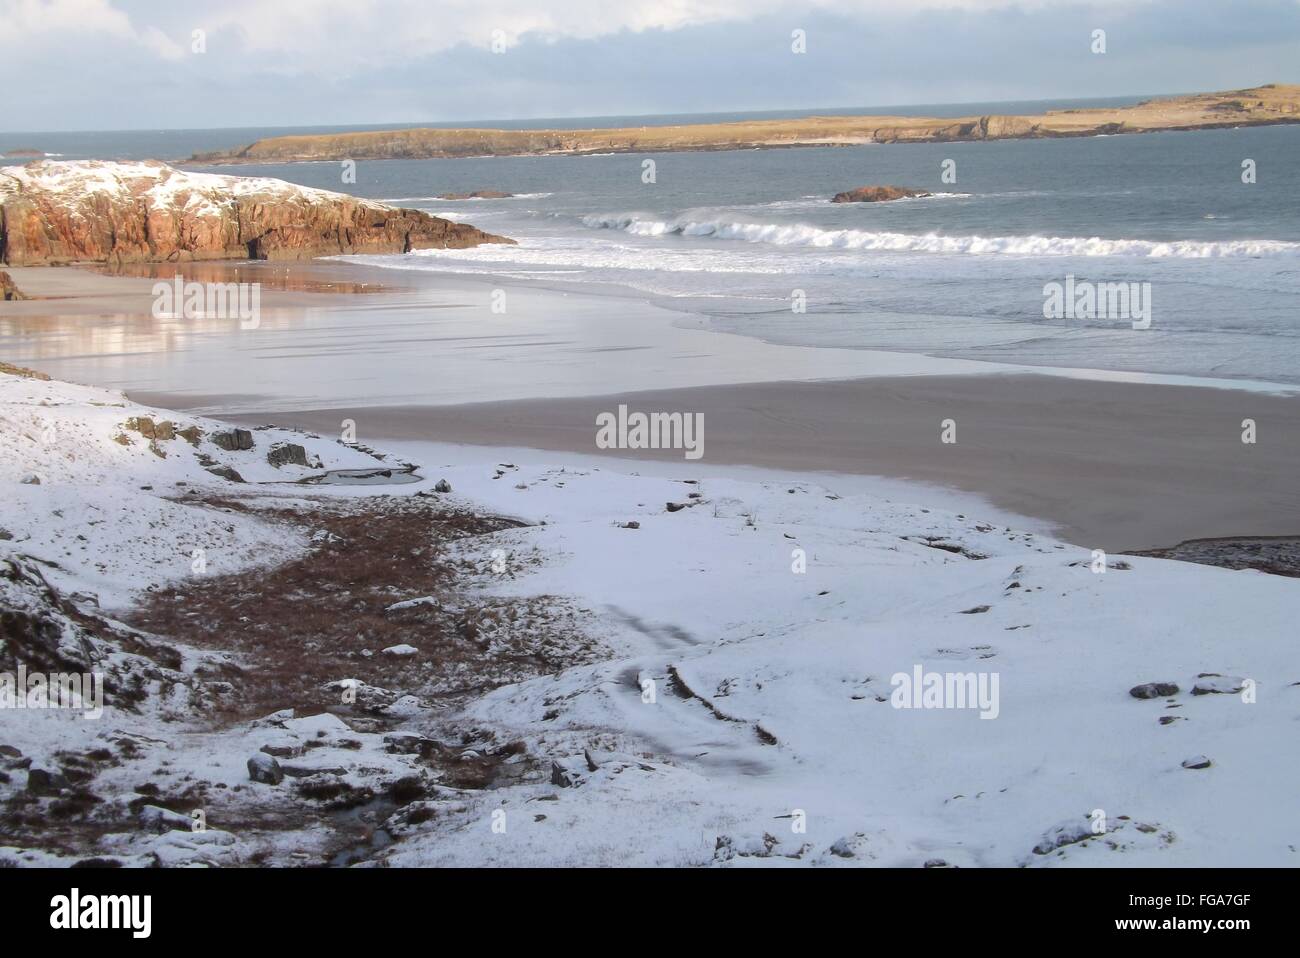 Ceannabeinne beach, Scotland - January 2015 Stock Photo